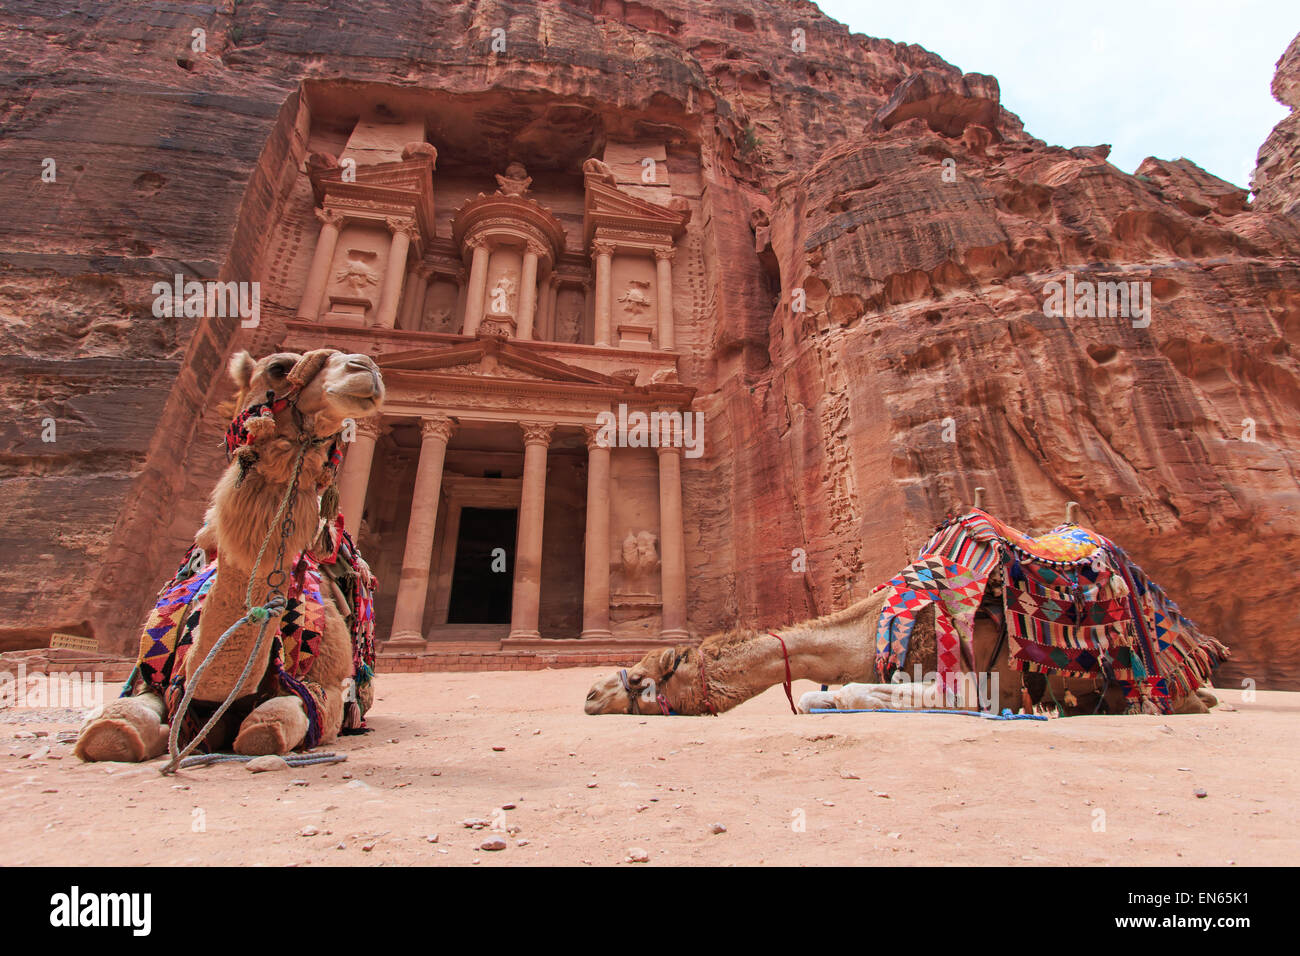 The Treasury,Al Khazneh, in Petra, Jordan Stock Photo